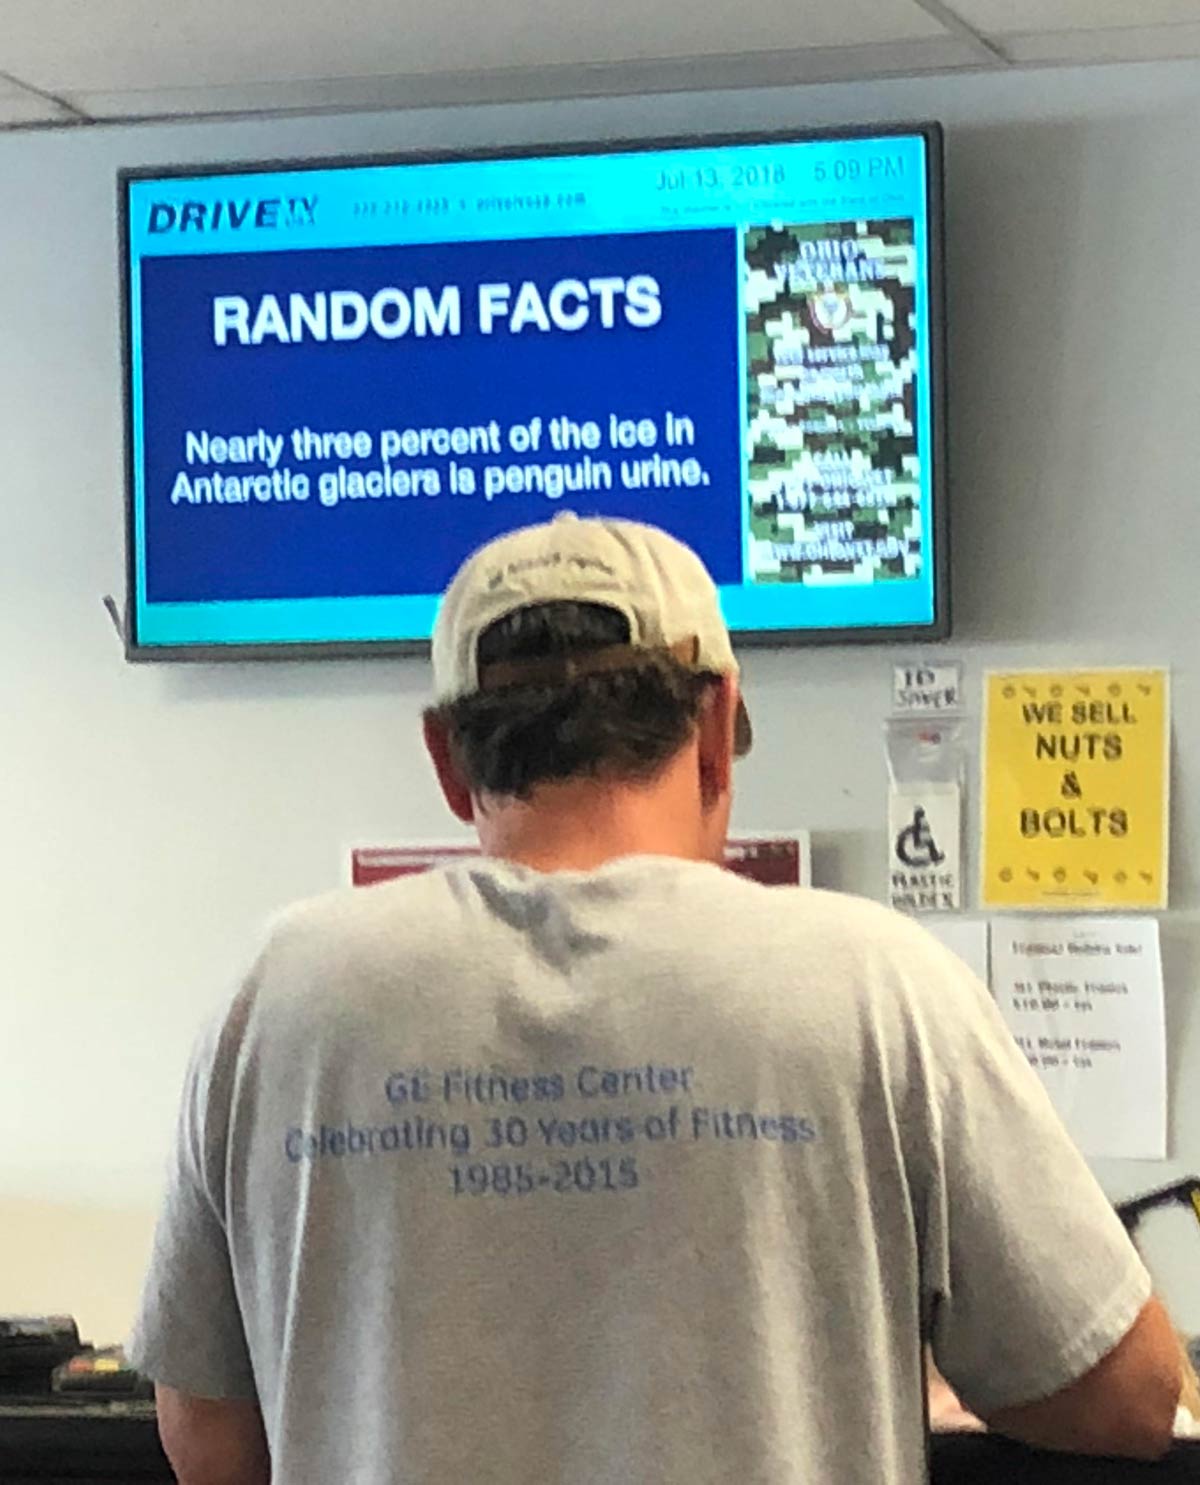 This random fact at the DMV